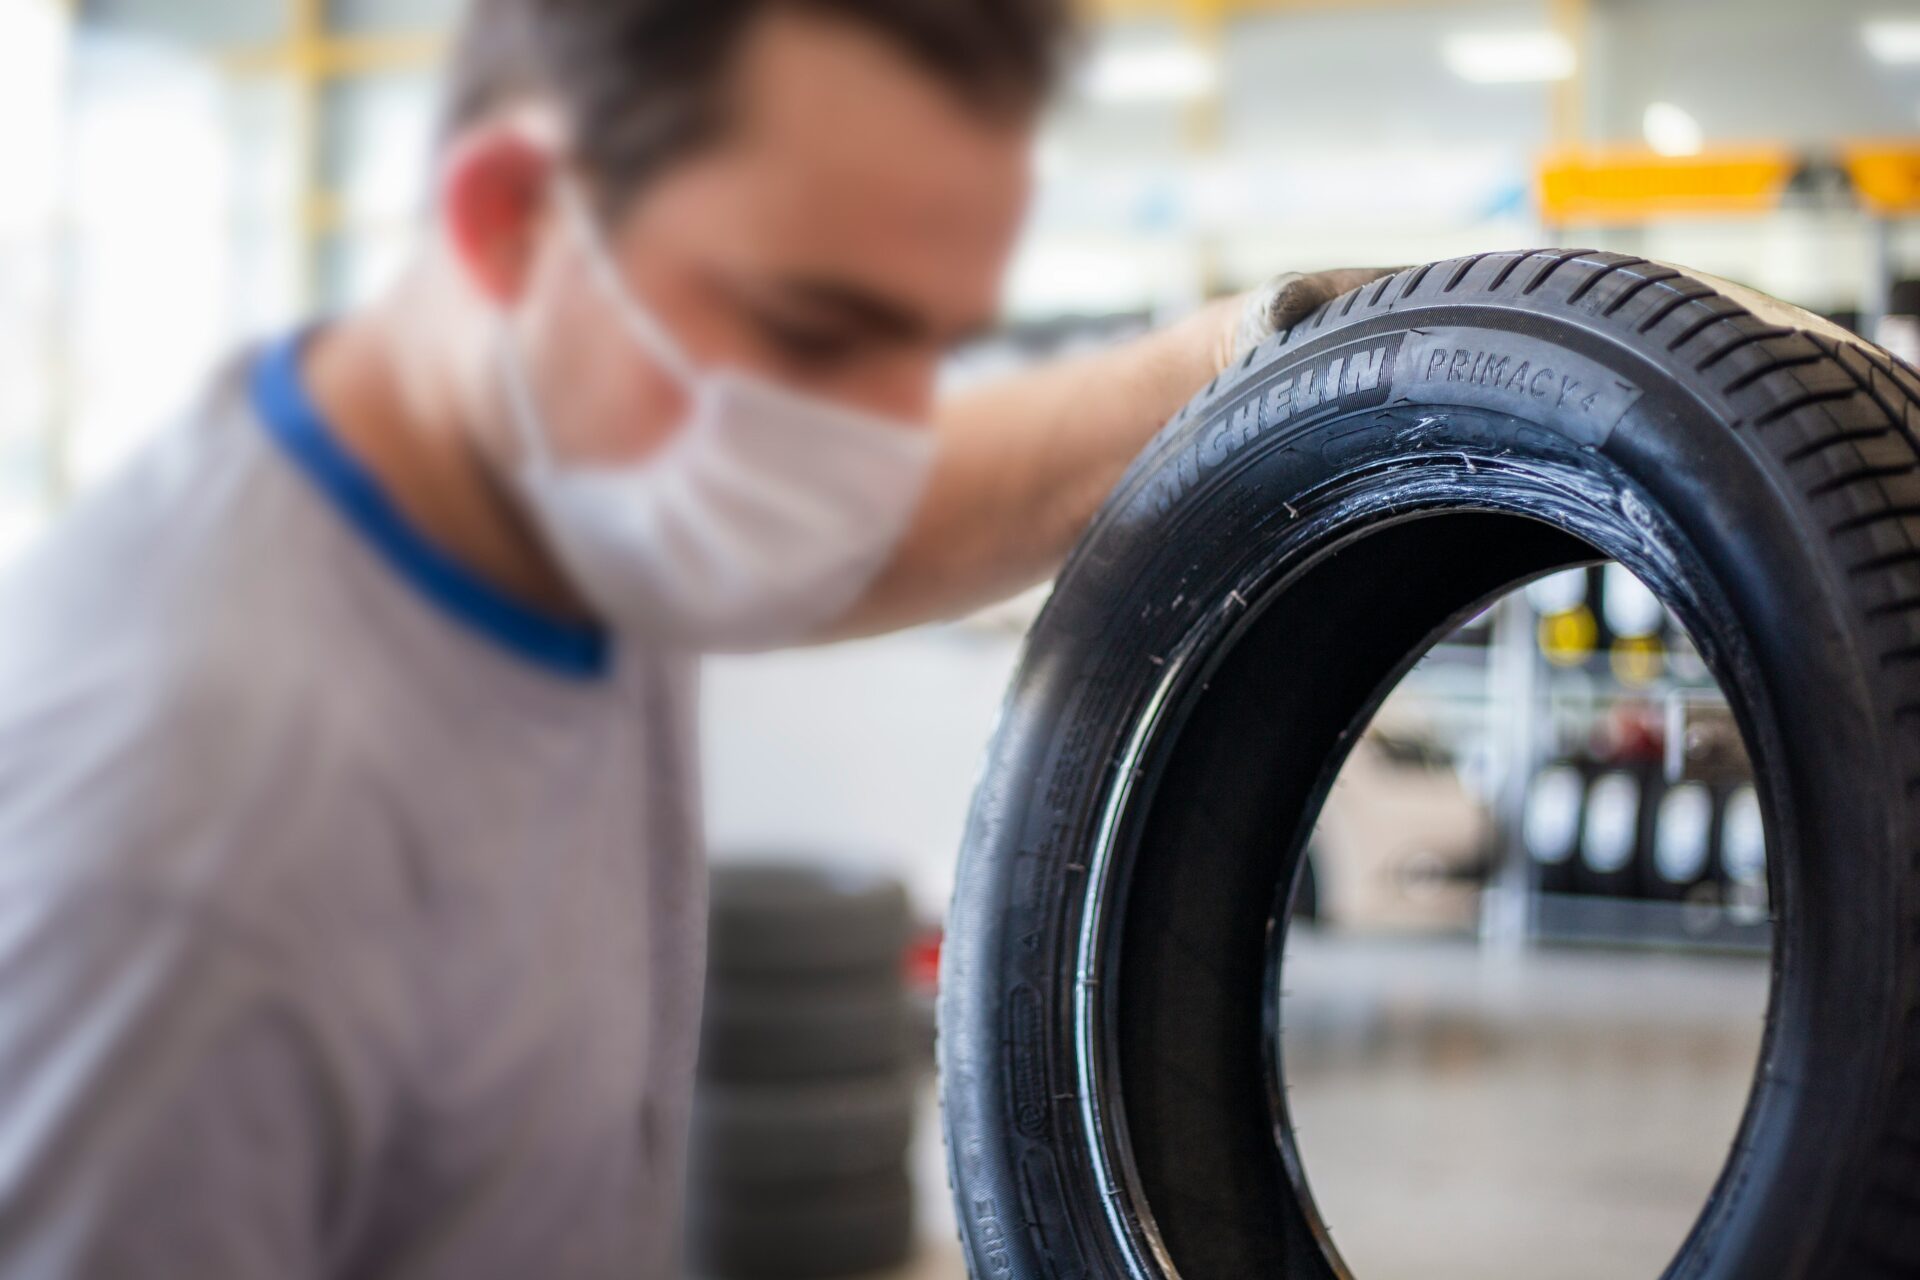 Эксперт «За рулем» рассказал, где можно посмотреть нужное значение давления в шинах